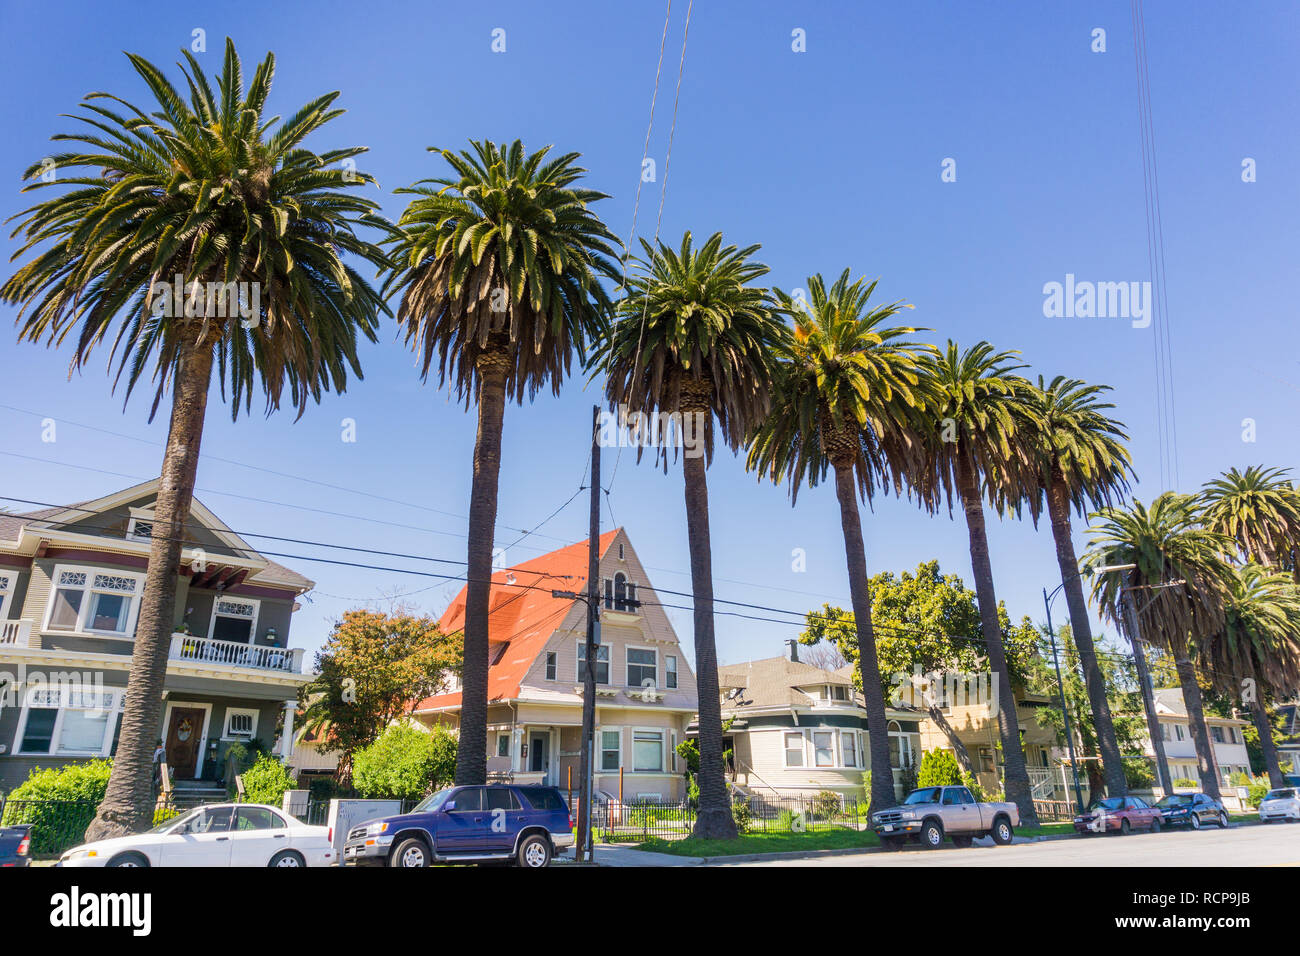 Le antiche case e le palme su una strada nel centro cittadino di San Jose, California Foto Stock